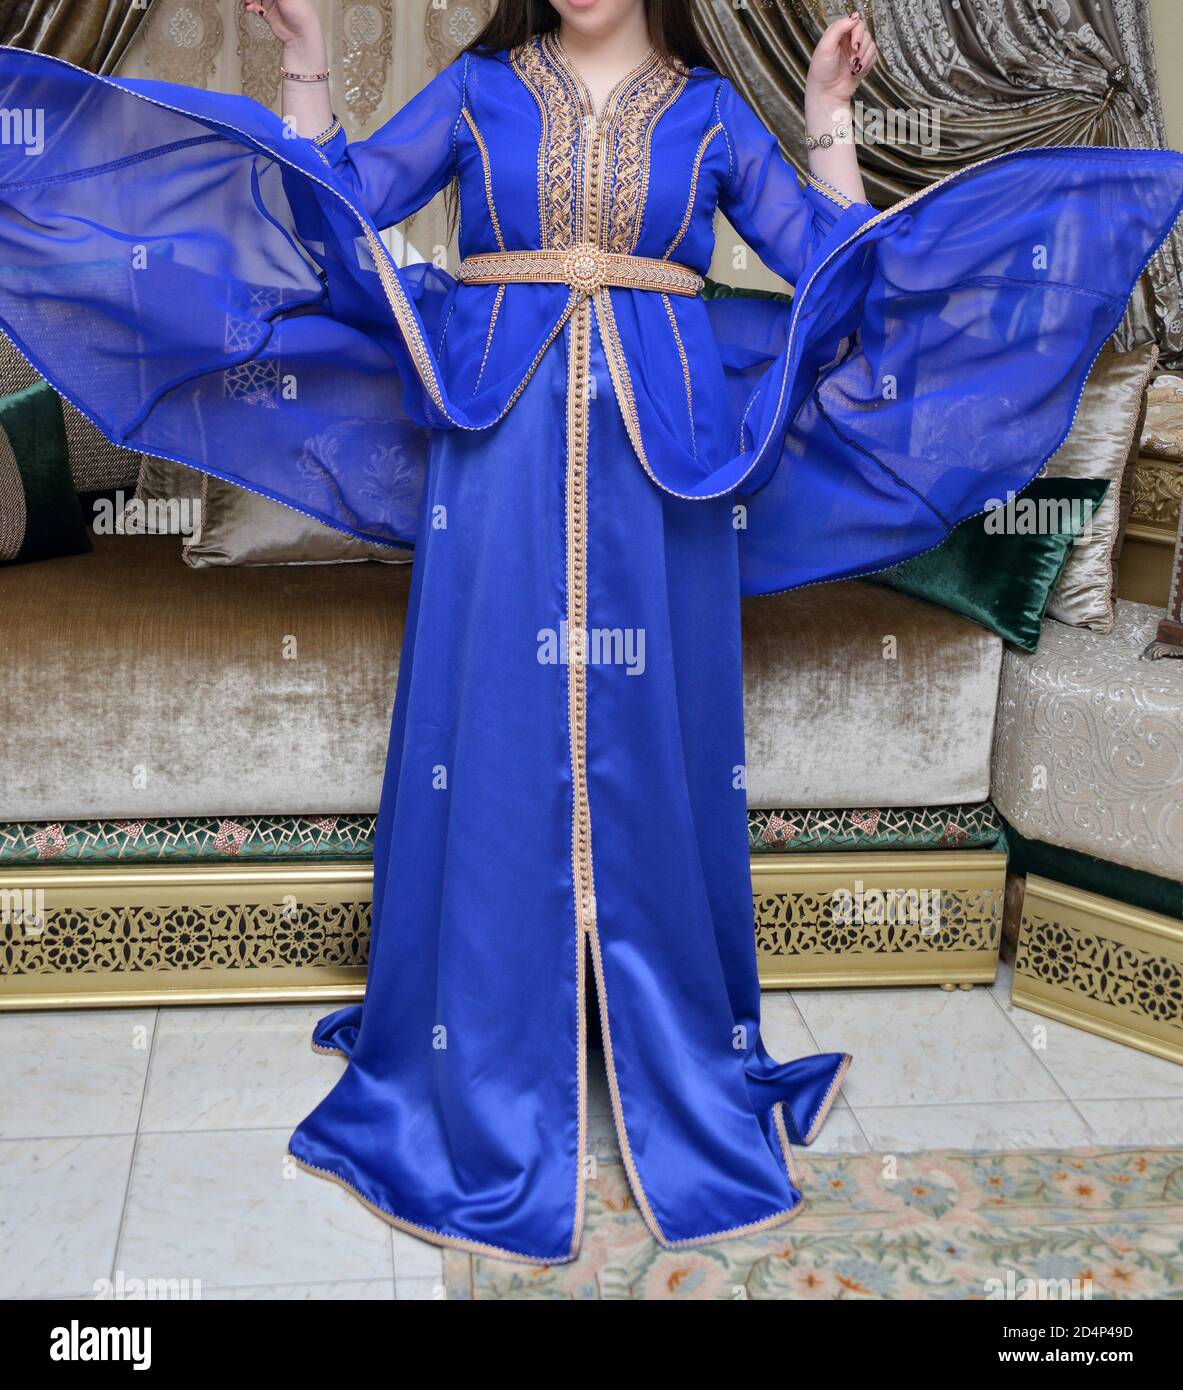 Costume marocchino immagini e fotografie stock ad alta risoluzione - Alamy